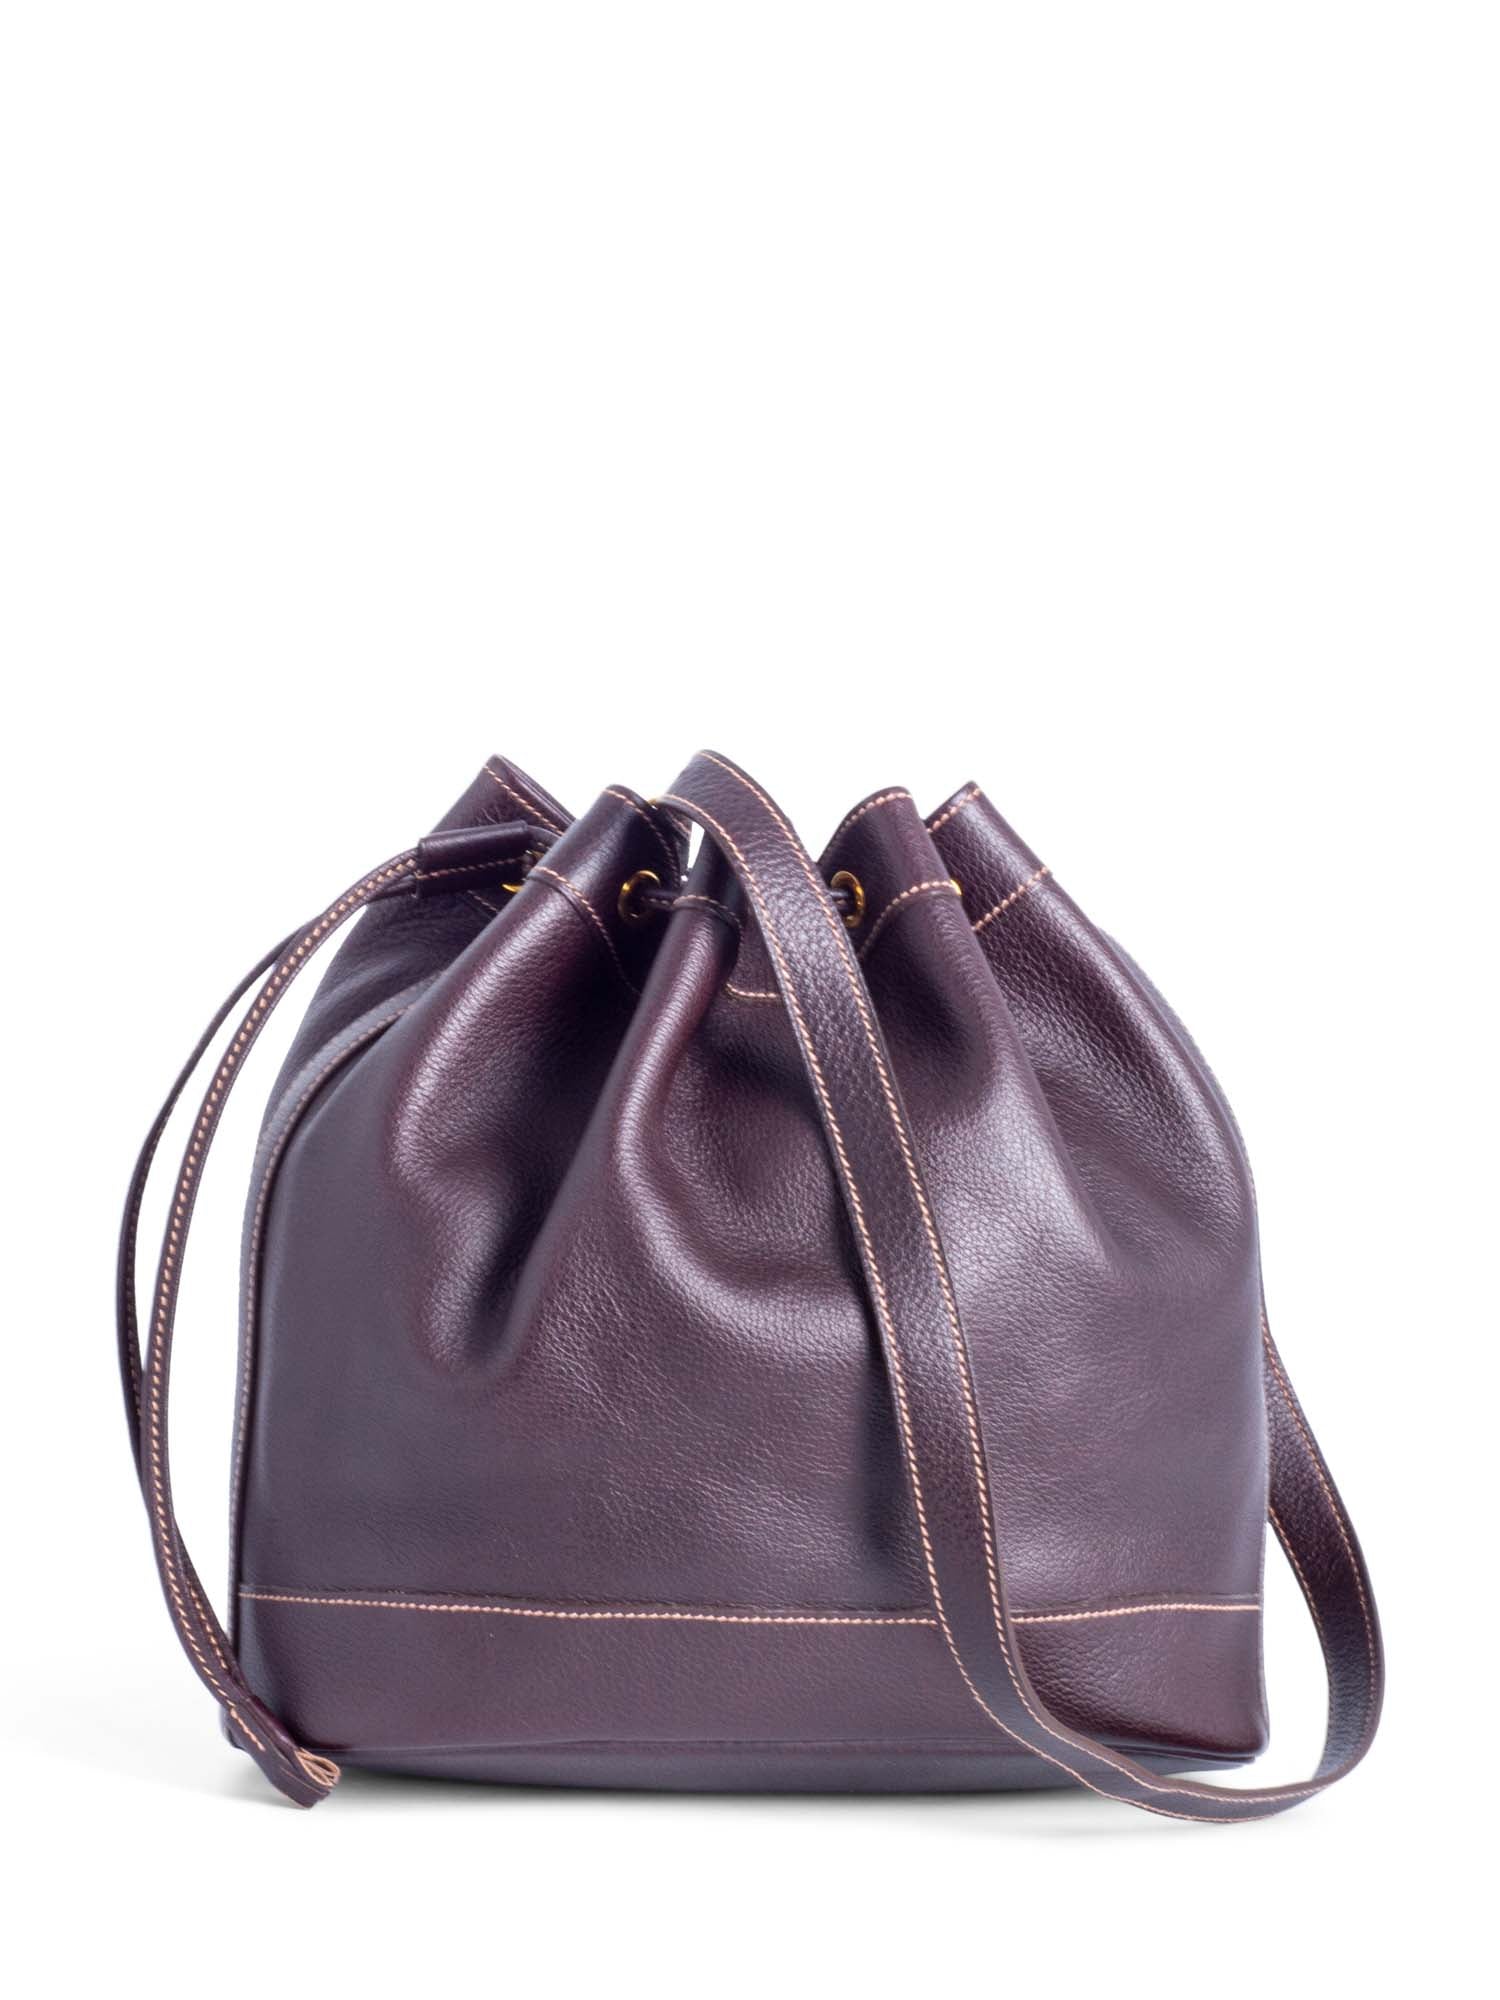 Hermes Leather Market Bucket Bag Brown-designer resale